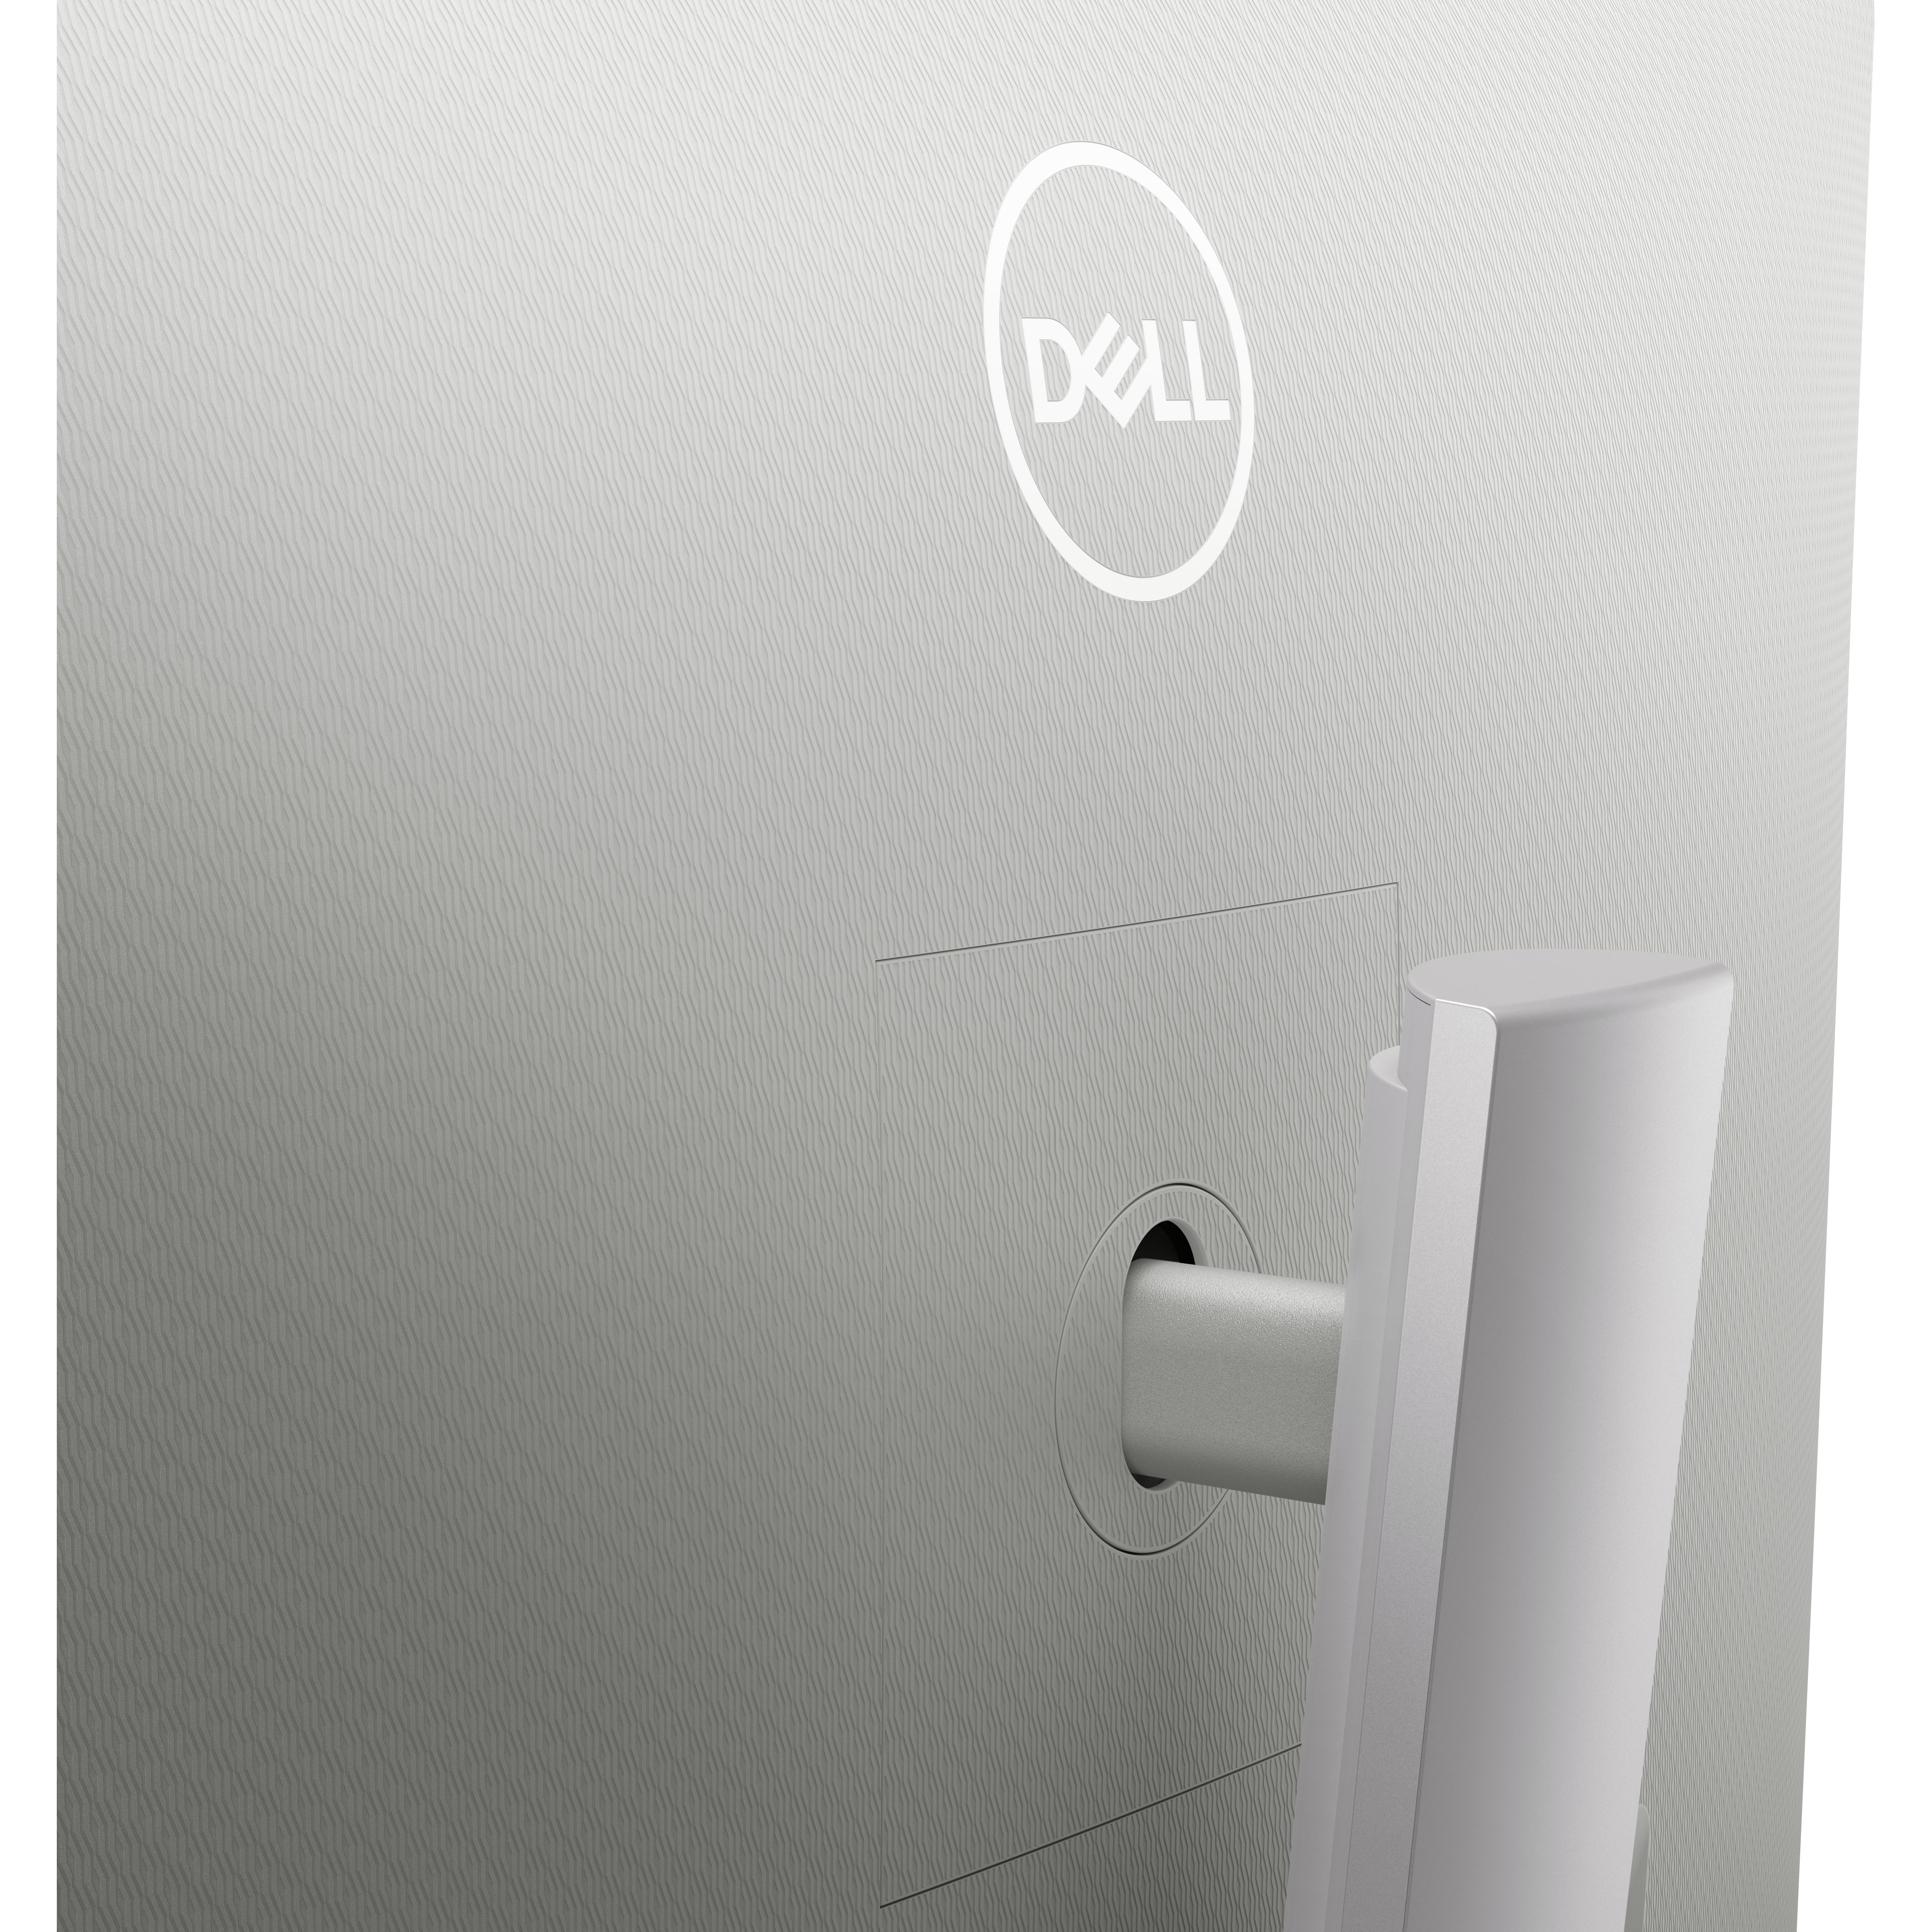 Dell 32 曲面 4K UHD モニター - S3221QS | Dell 日本